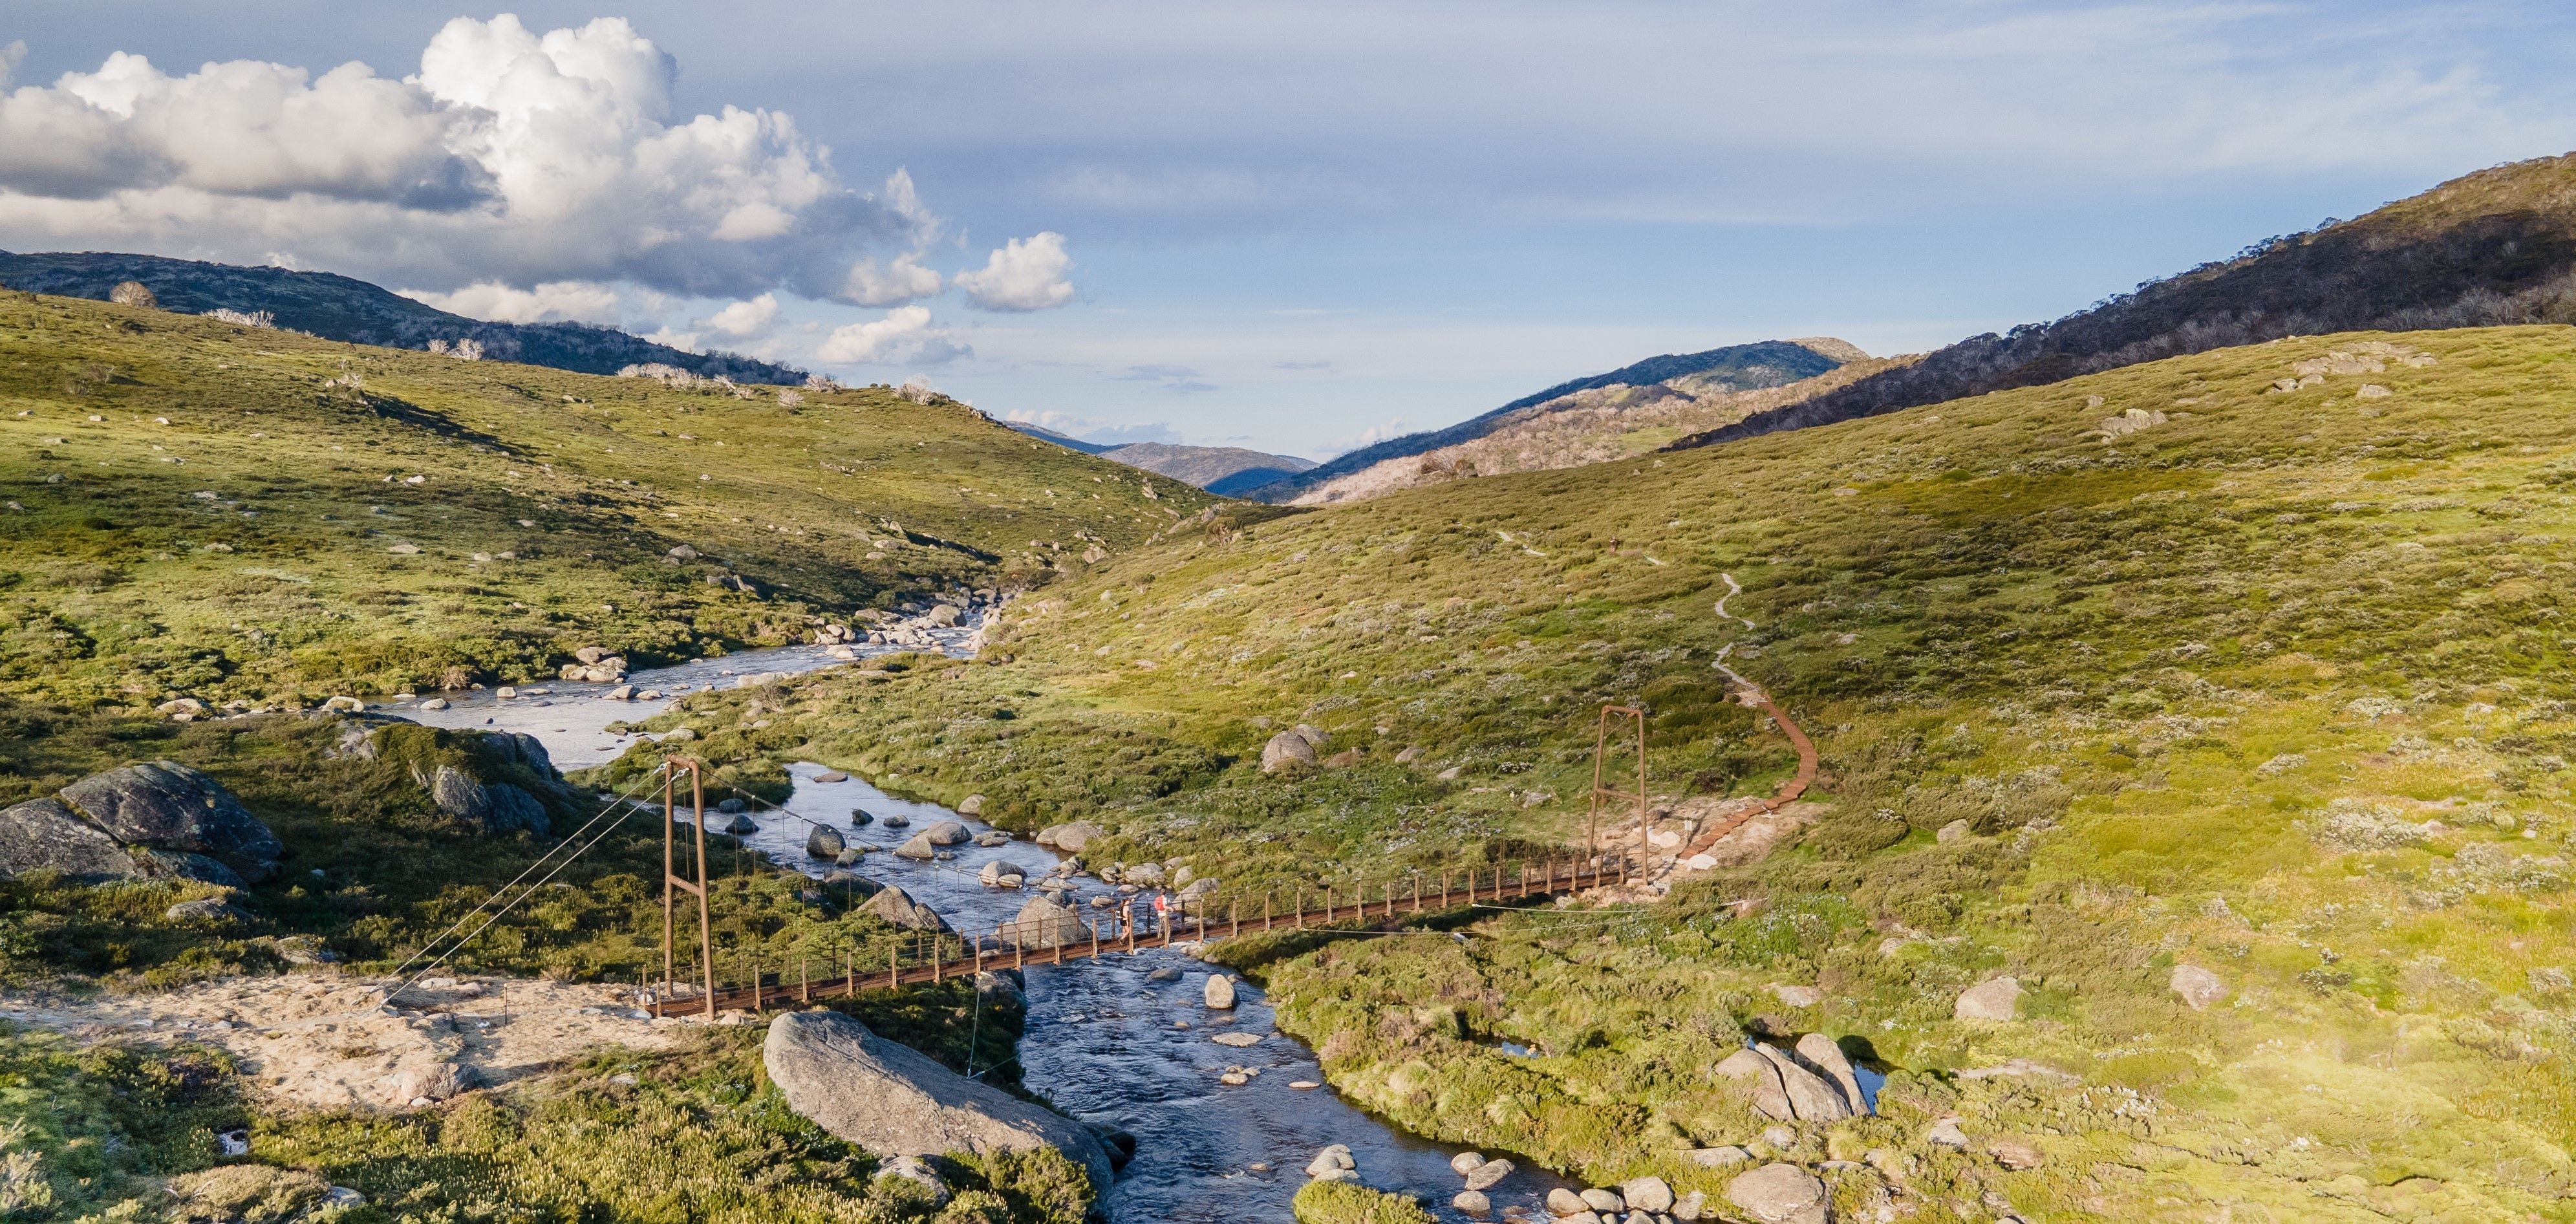 Australia's highest suspension bridge opens path to alpine tourism